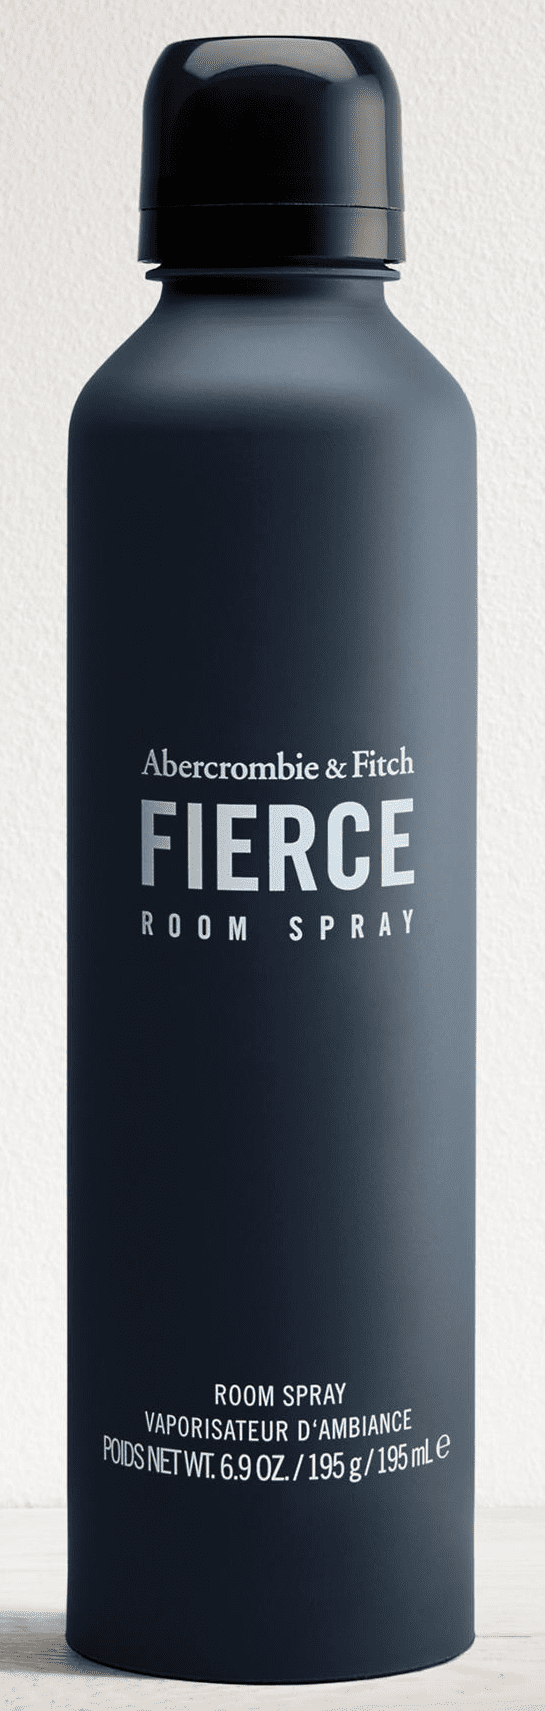 fierce room spray